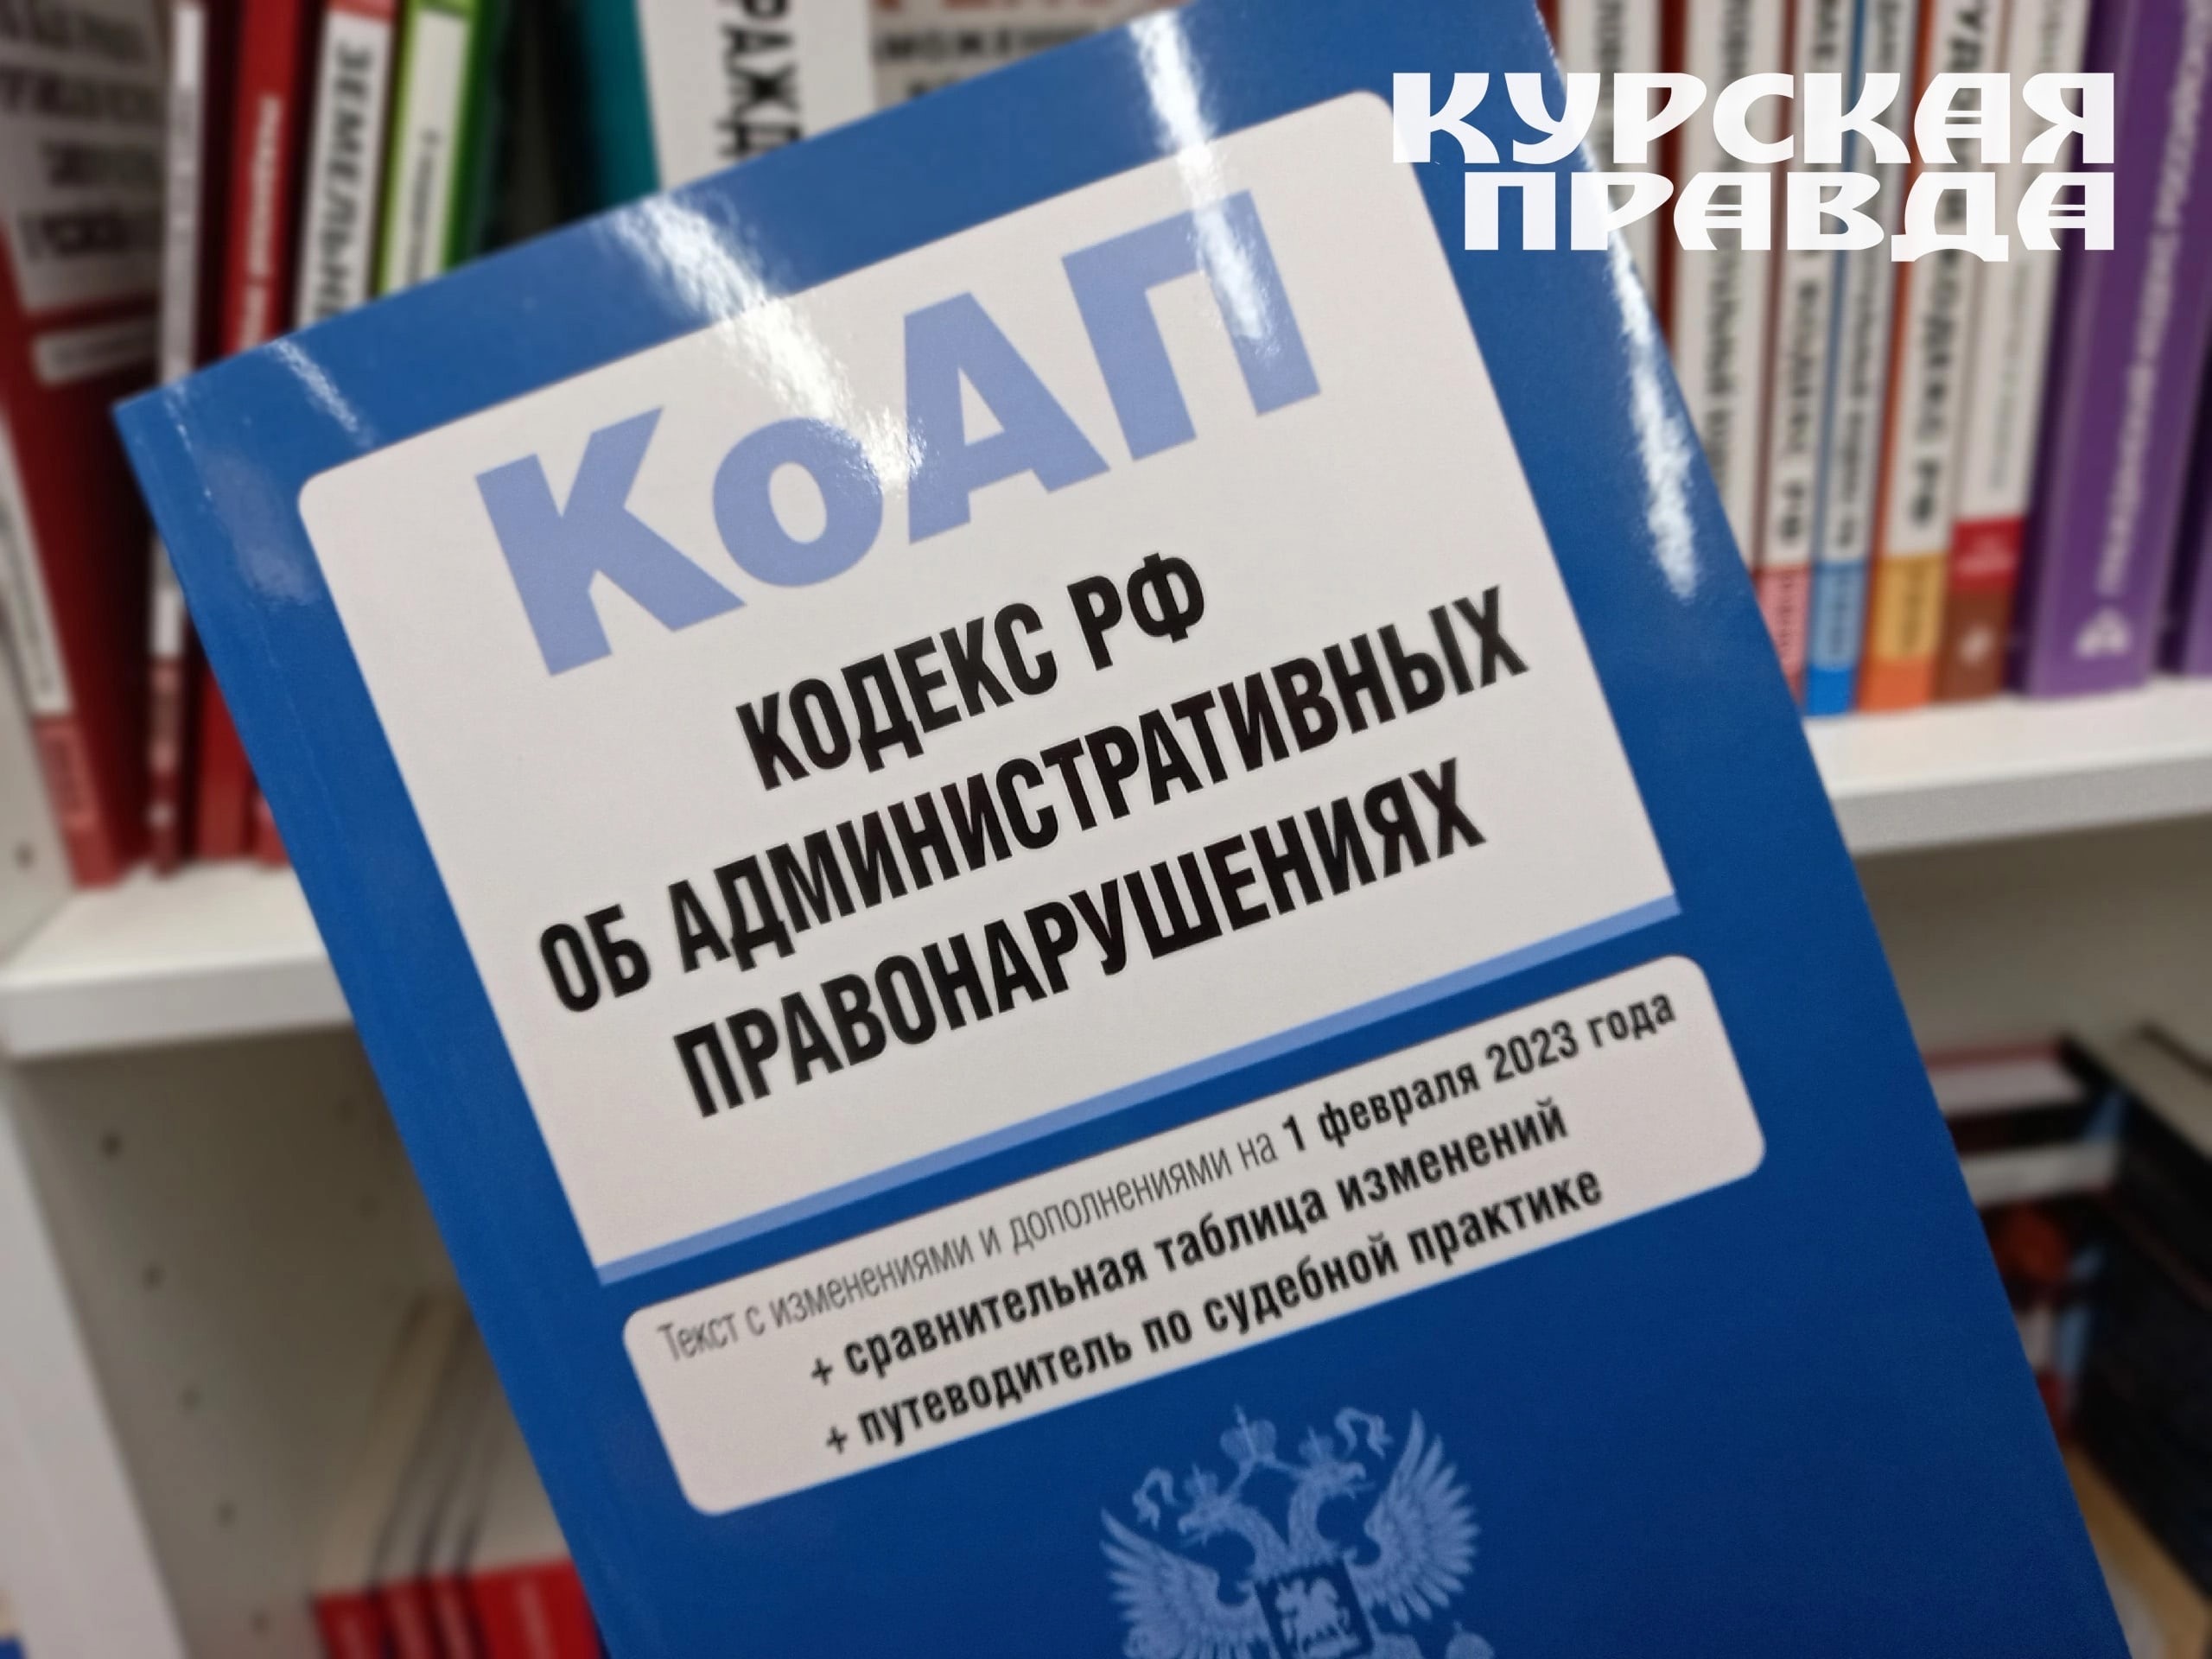 Жителя Курской области оштрафовали за то, что он таксовал, не оформив ИП